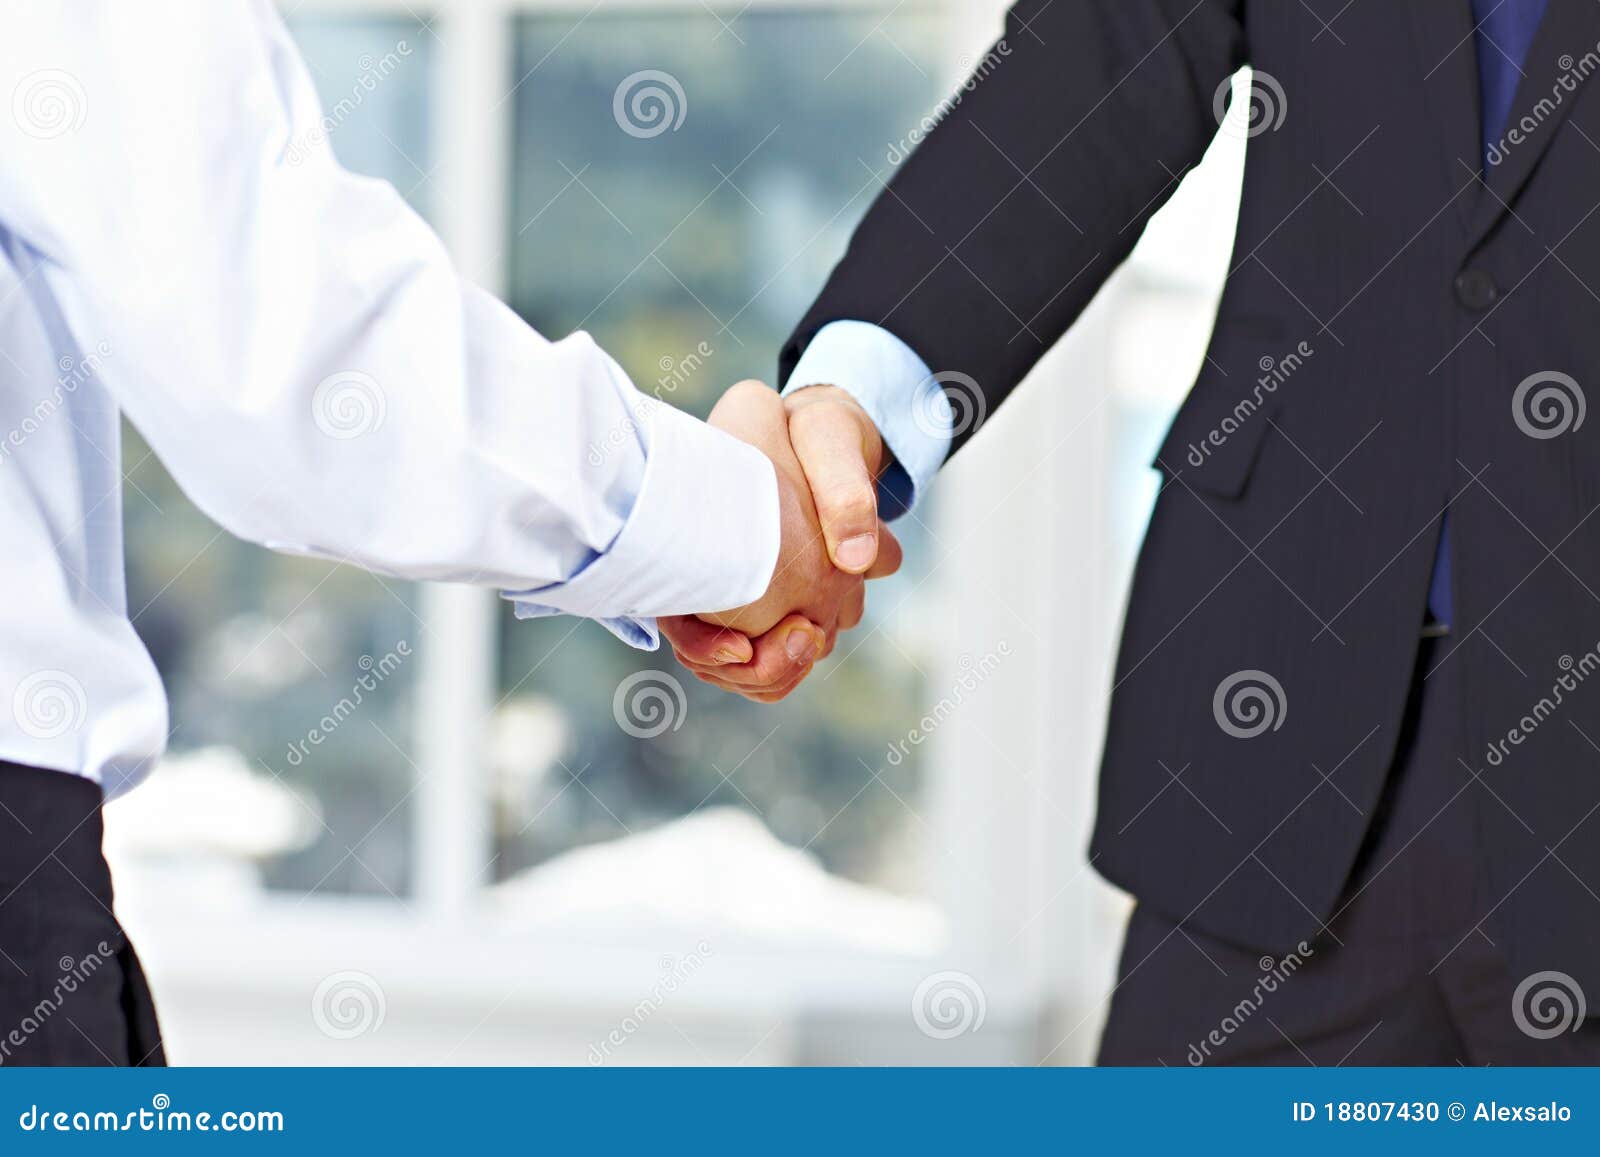 business men shaking hands